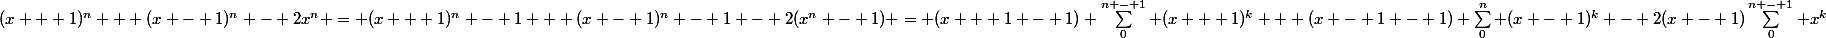 (x + 1)^n + (x - 1)^n - 2x^n = (x + 1)^n - 1 + (x - 1)^n - 1 - 2(x^n - 1) = (x + 1 - 1) \sum_0^{n - 1} (x + 1)^k + (x - 1 - 1) \sum_0^n (x - 1)^k - 2(x - 1)\sum_0^{n - 1} x^k